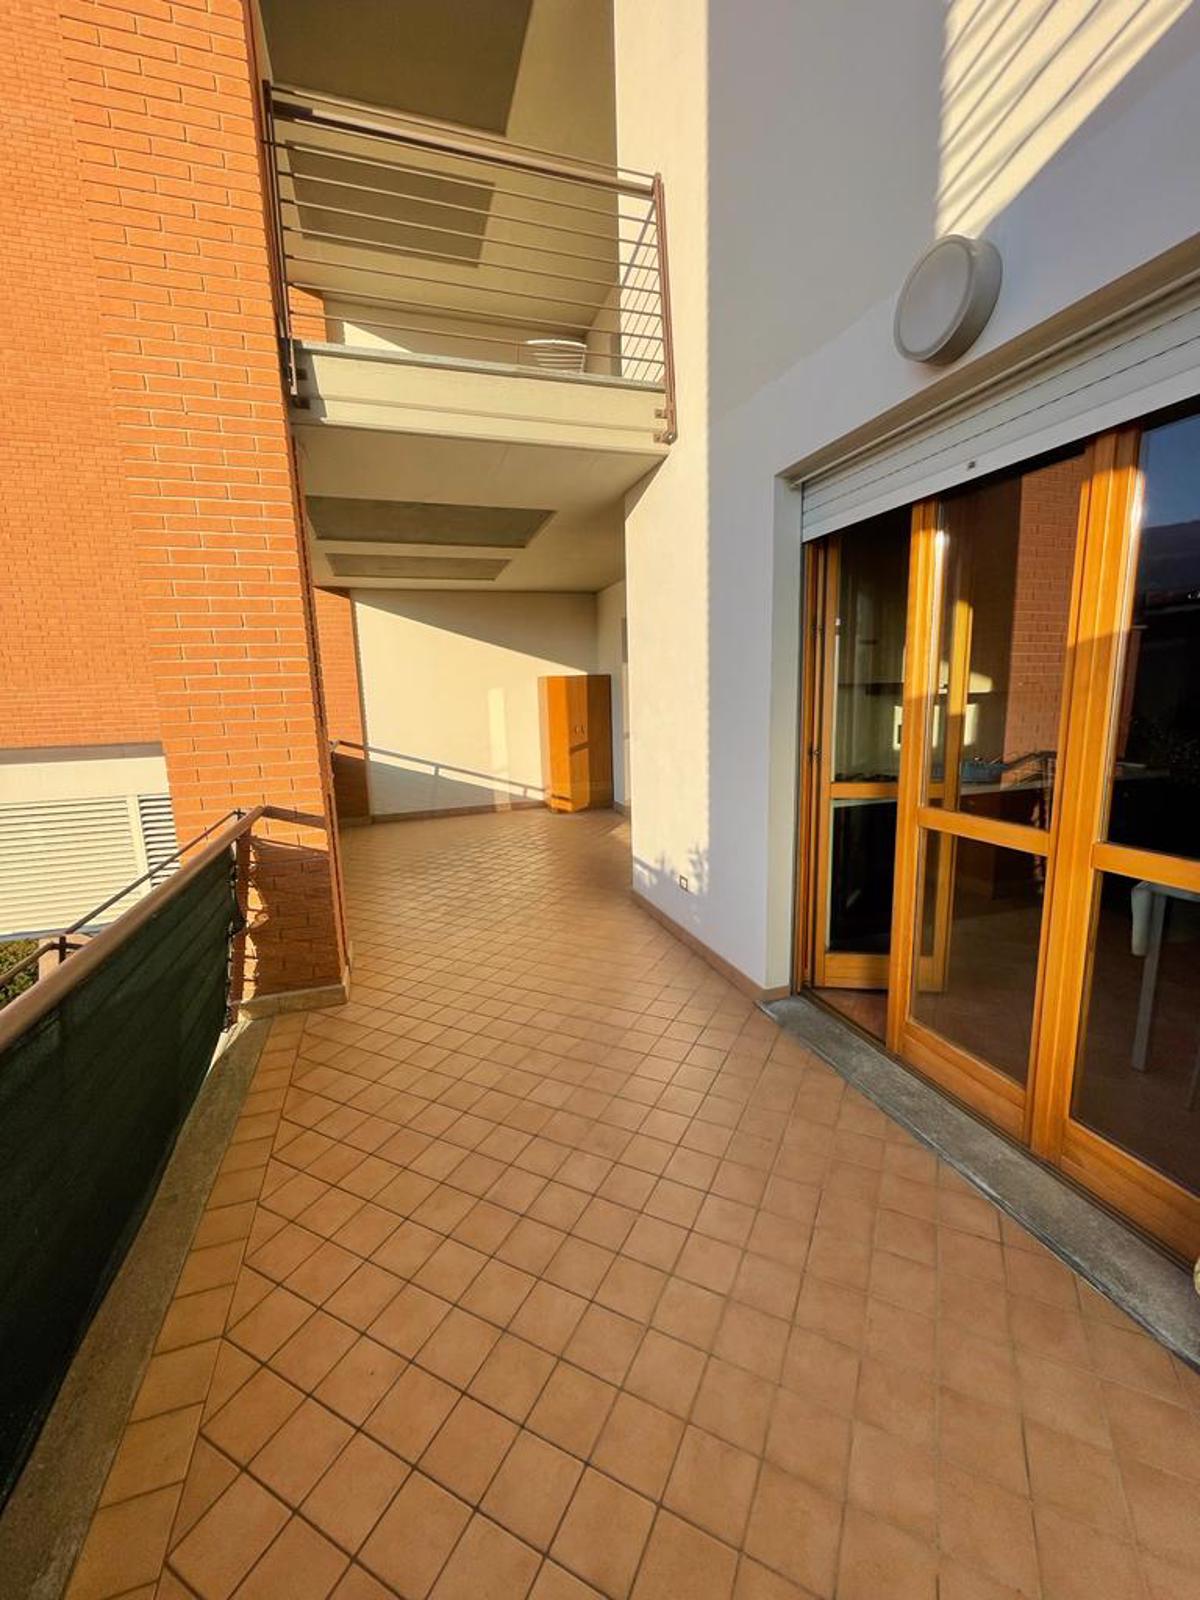 Appartamento in affitto a Pinerolo, 2 locali, prezzo € 380 | CambioCasa.it